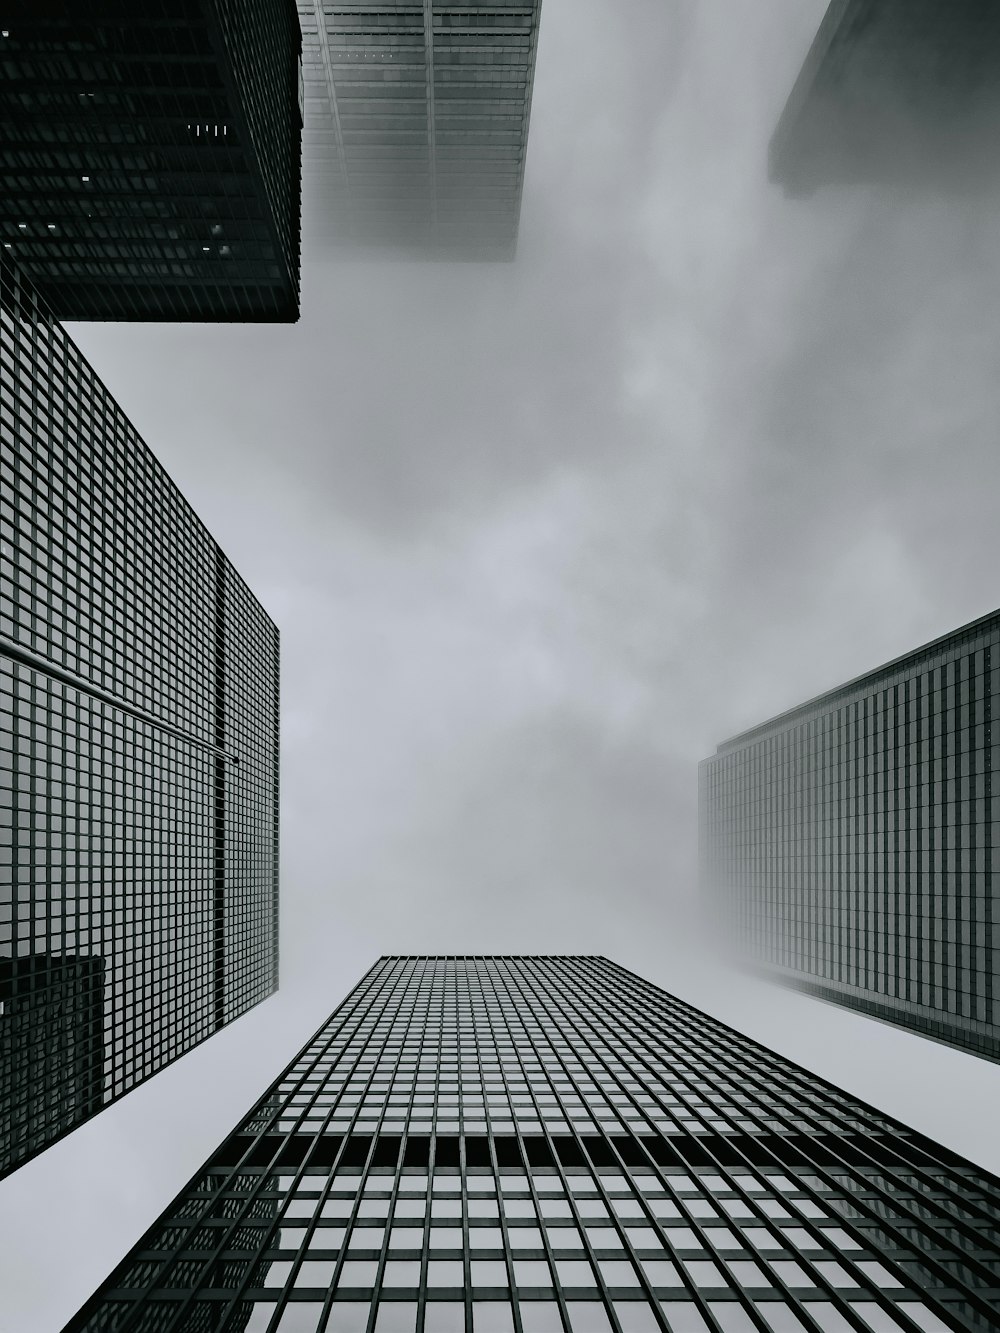 uma foto em preto e branco de edifícios altos